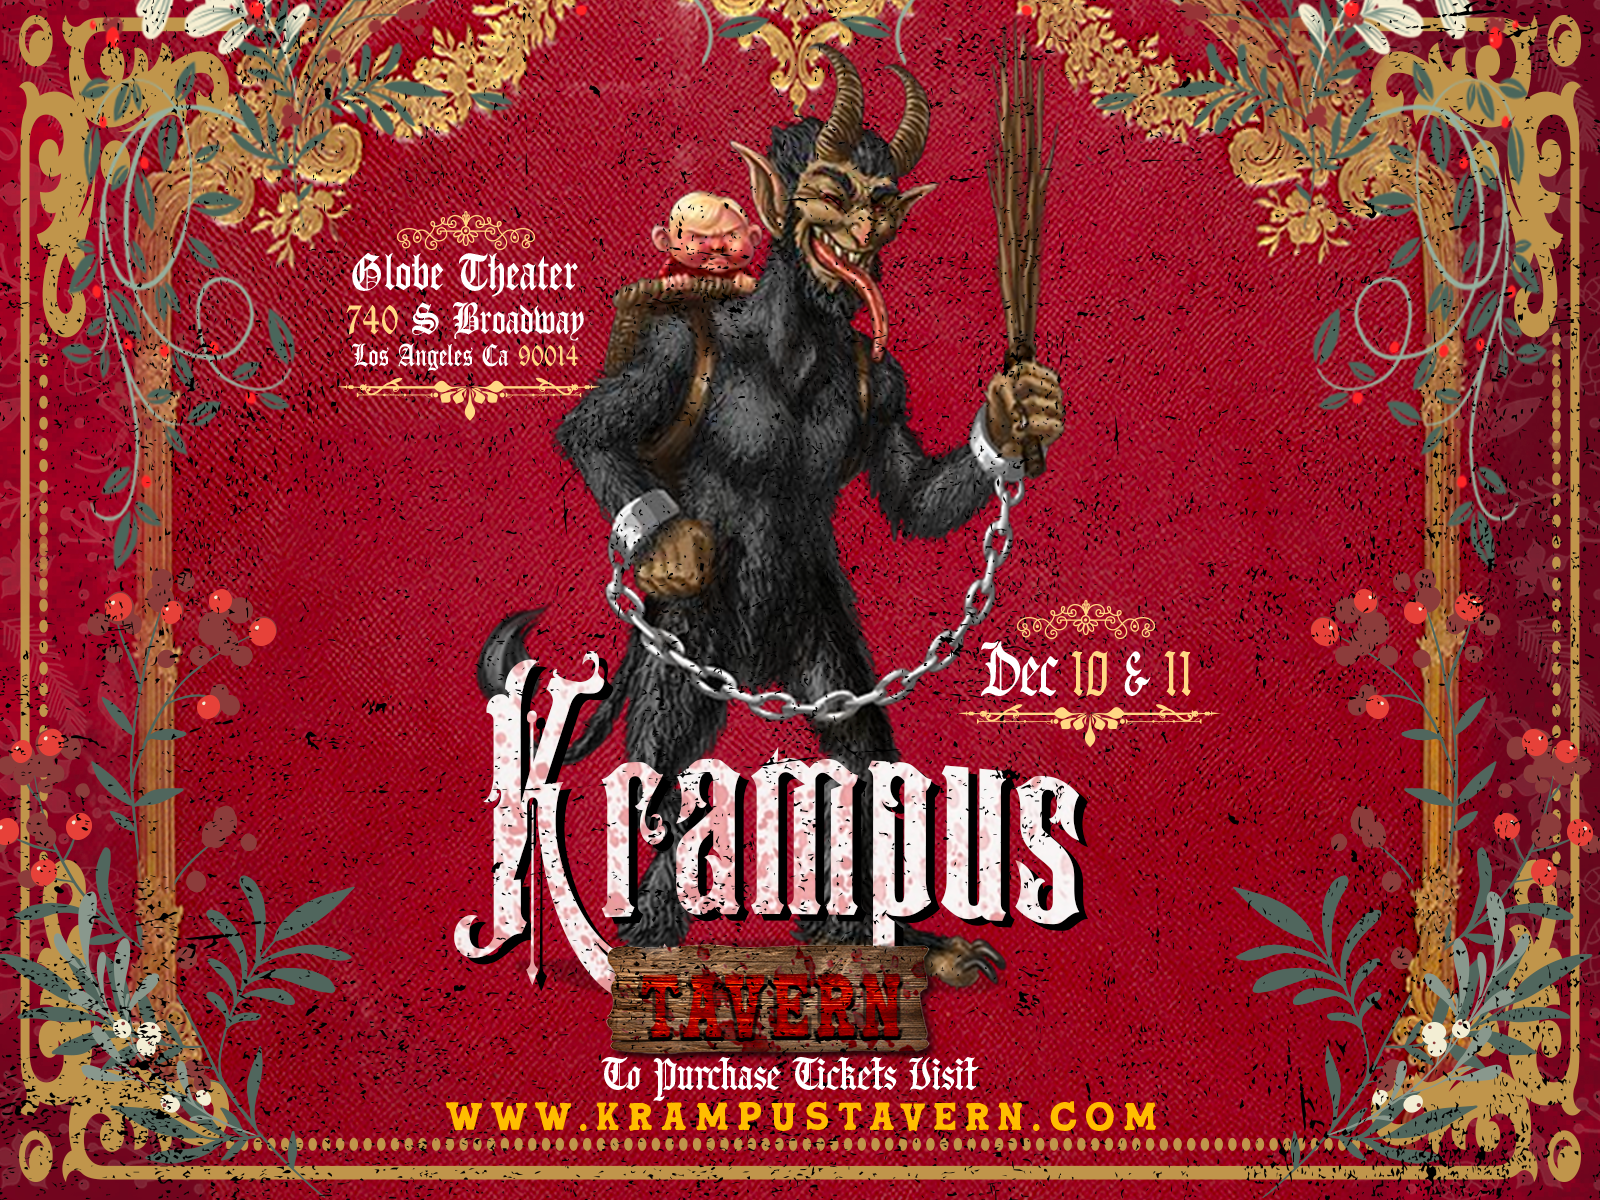 Krampus Tavern Flyer